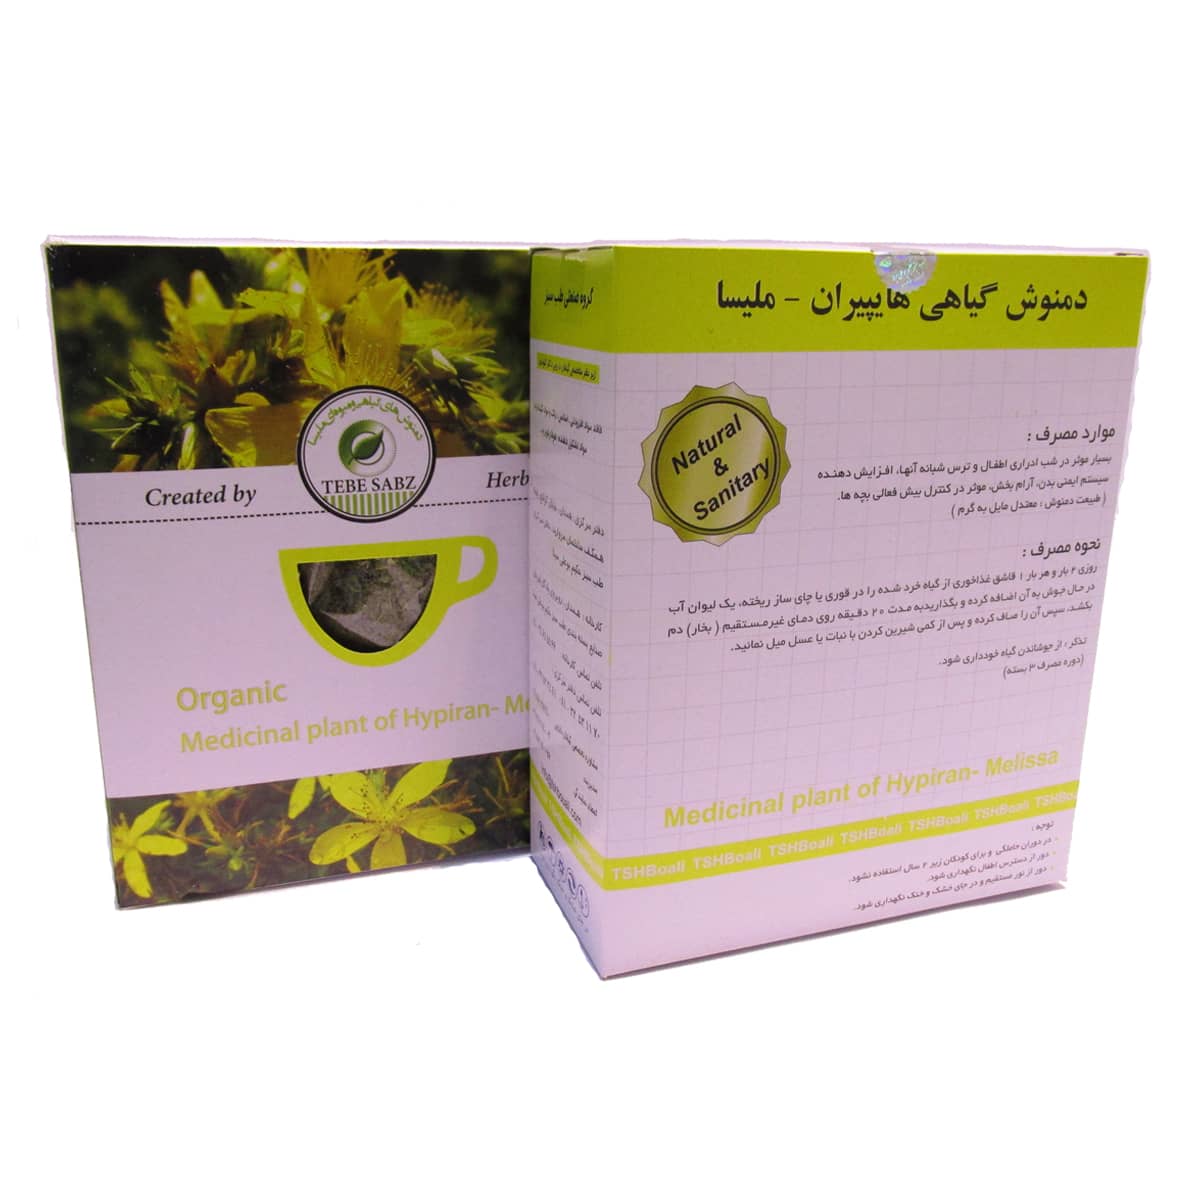 دمنوش گیاهی هایپیران – ملیسا (درمان شب ادراری، ضد التهاب دستگاه تناسلی ادراری، موثرترين داروی آرام بخش)